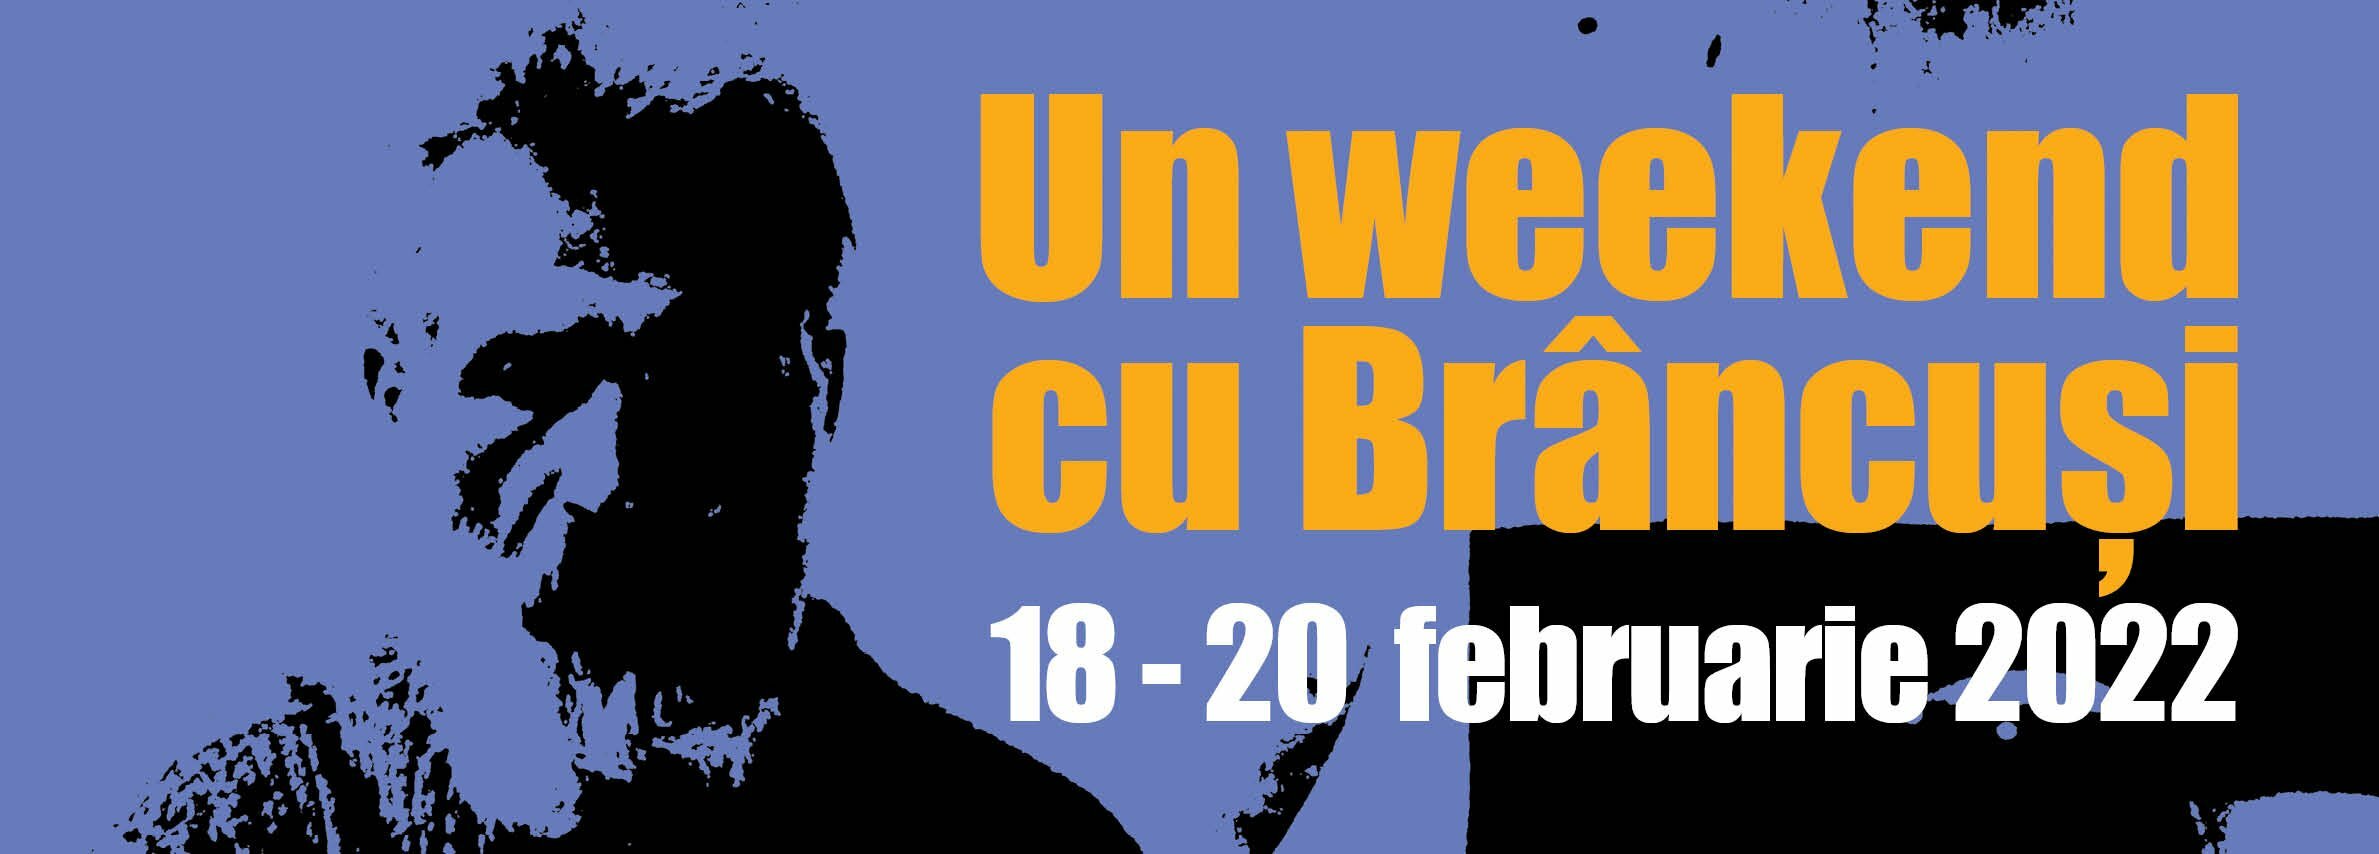 Muzeul Naţional de Artă al României oferă publicului “un weekend cu Brâncuşi”, între 18 şi 20 februarie